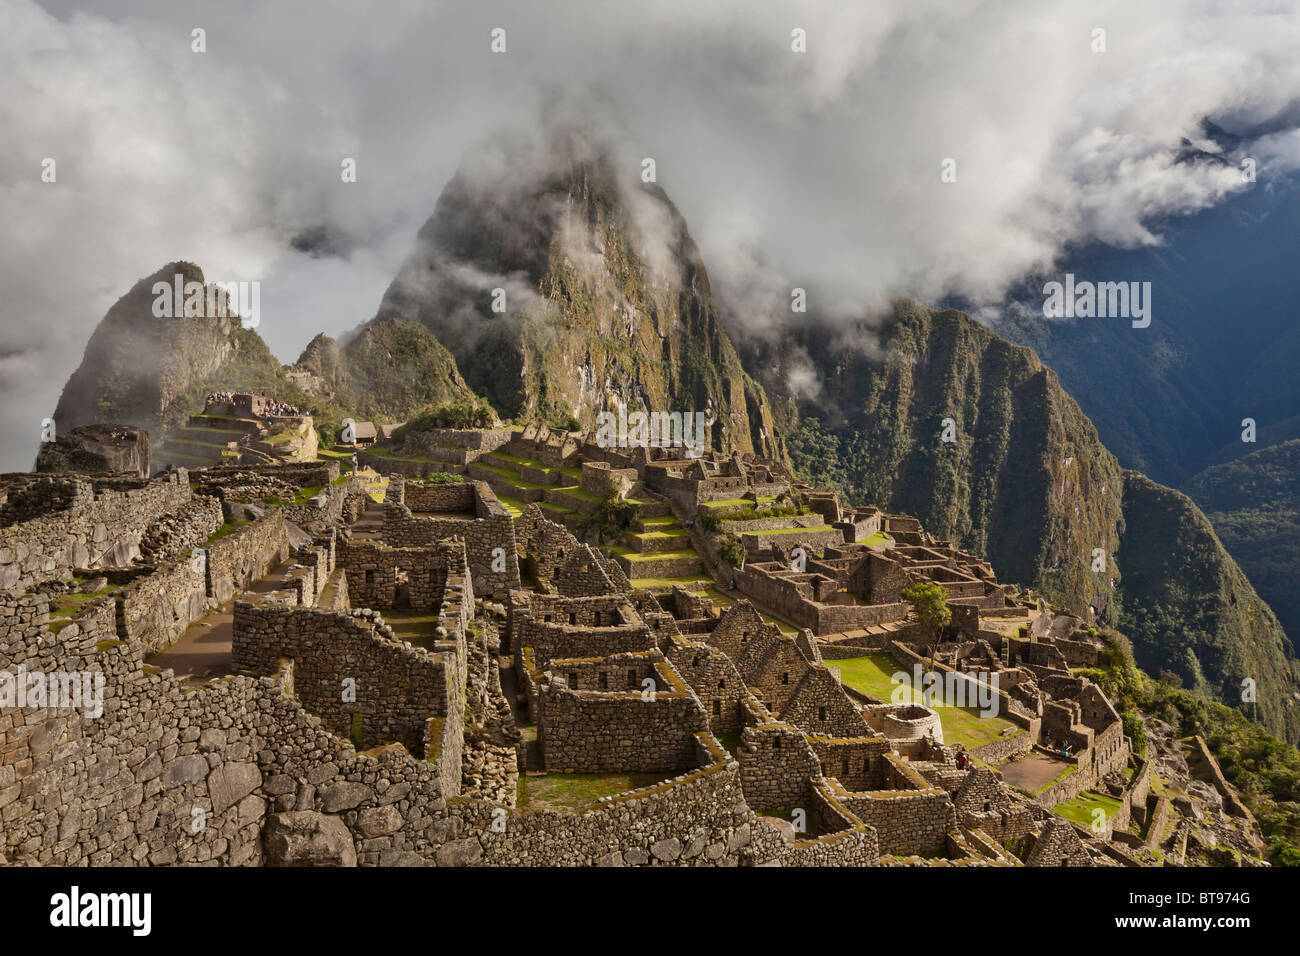 Las nubes y la niebla matutina revelan la ciudadela de Machu Picchu, la antigua "ciudad perdida de los Incas", CA 1400, 2400 metros. Foto de stock